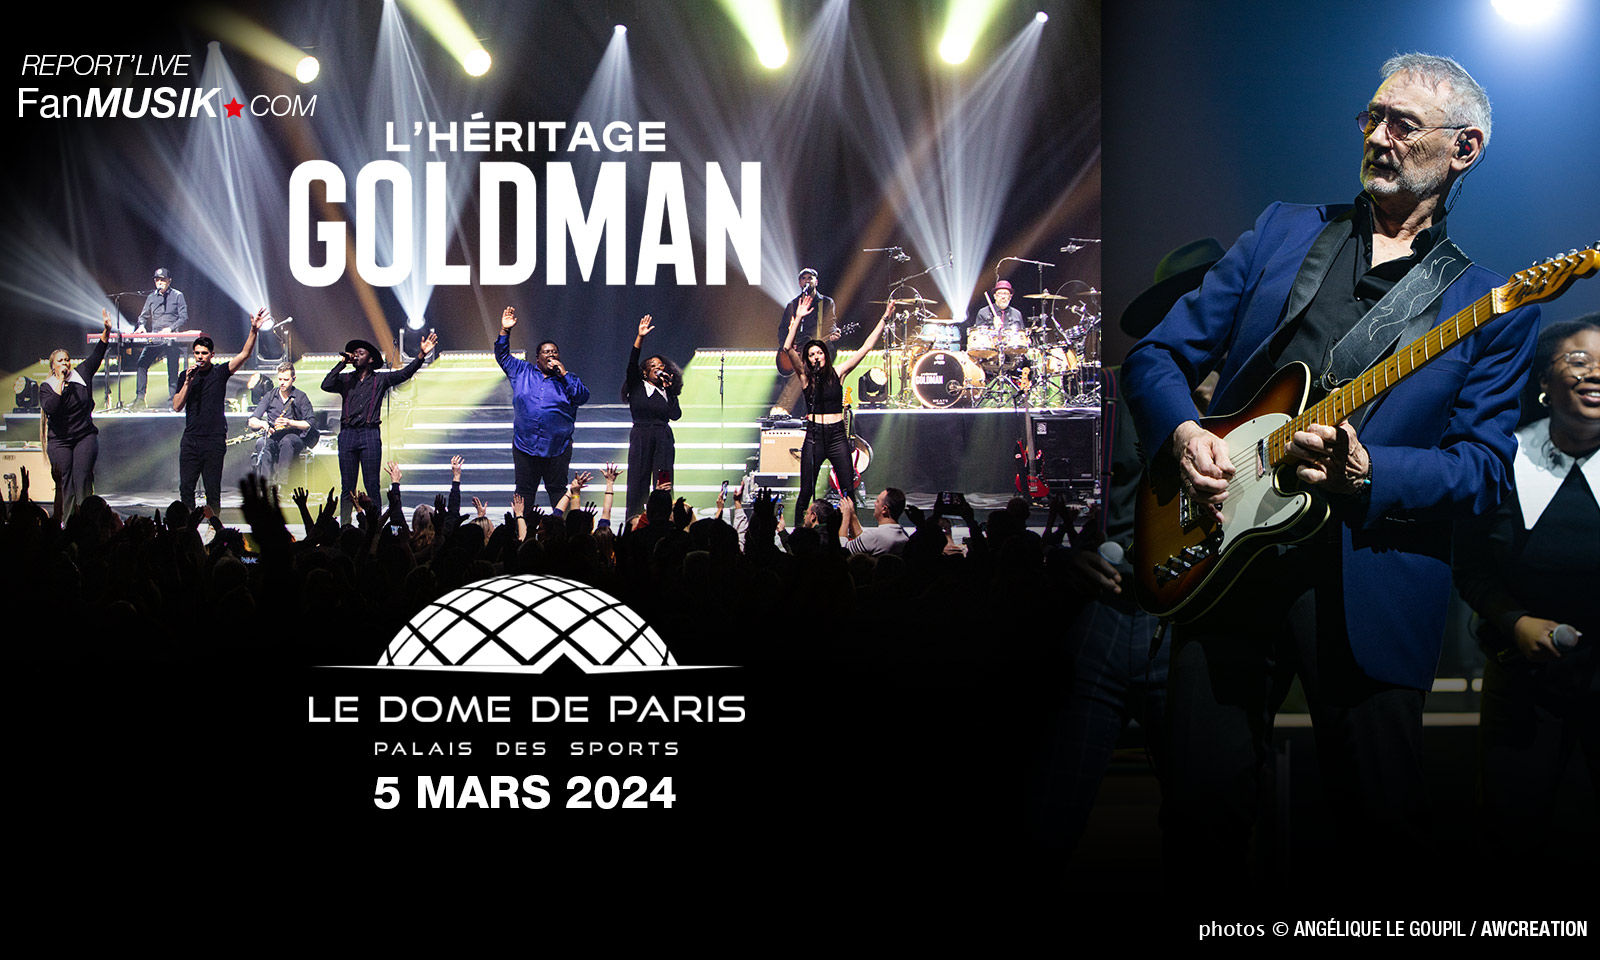 L'Héritage Goldman, 5 mars 2024, Dôme de Paris (photos)